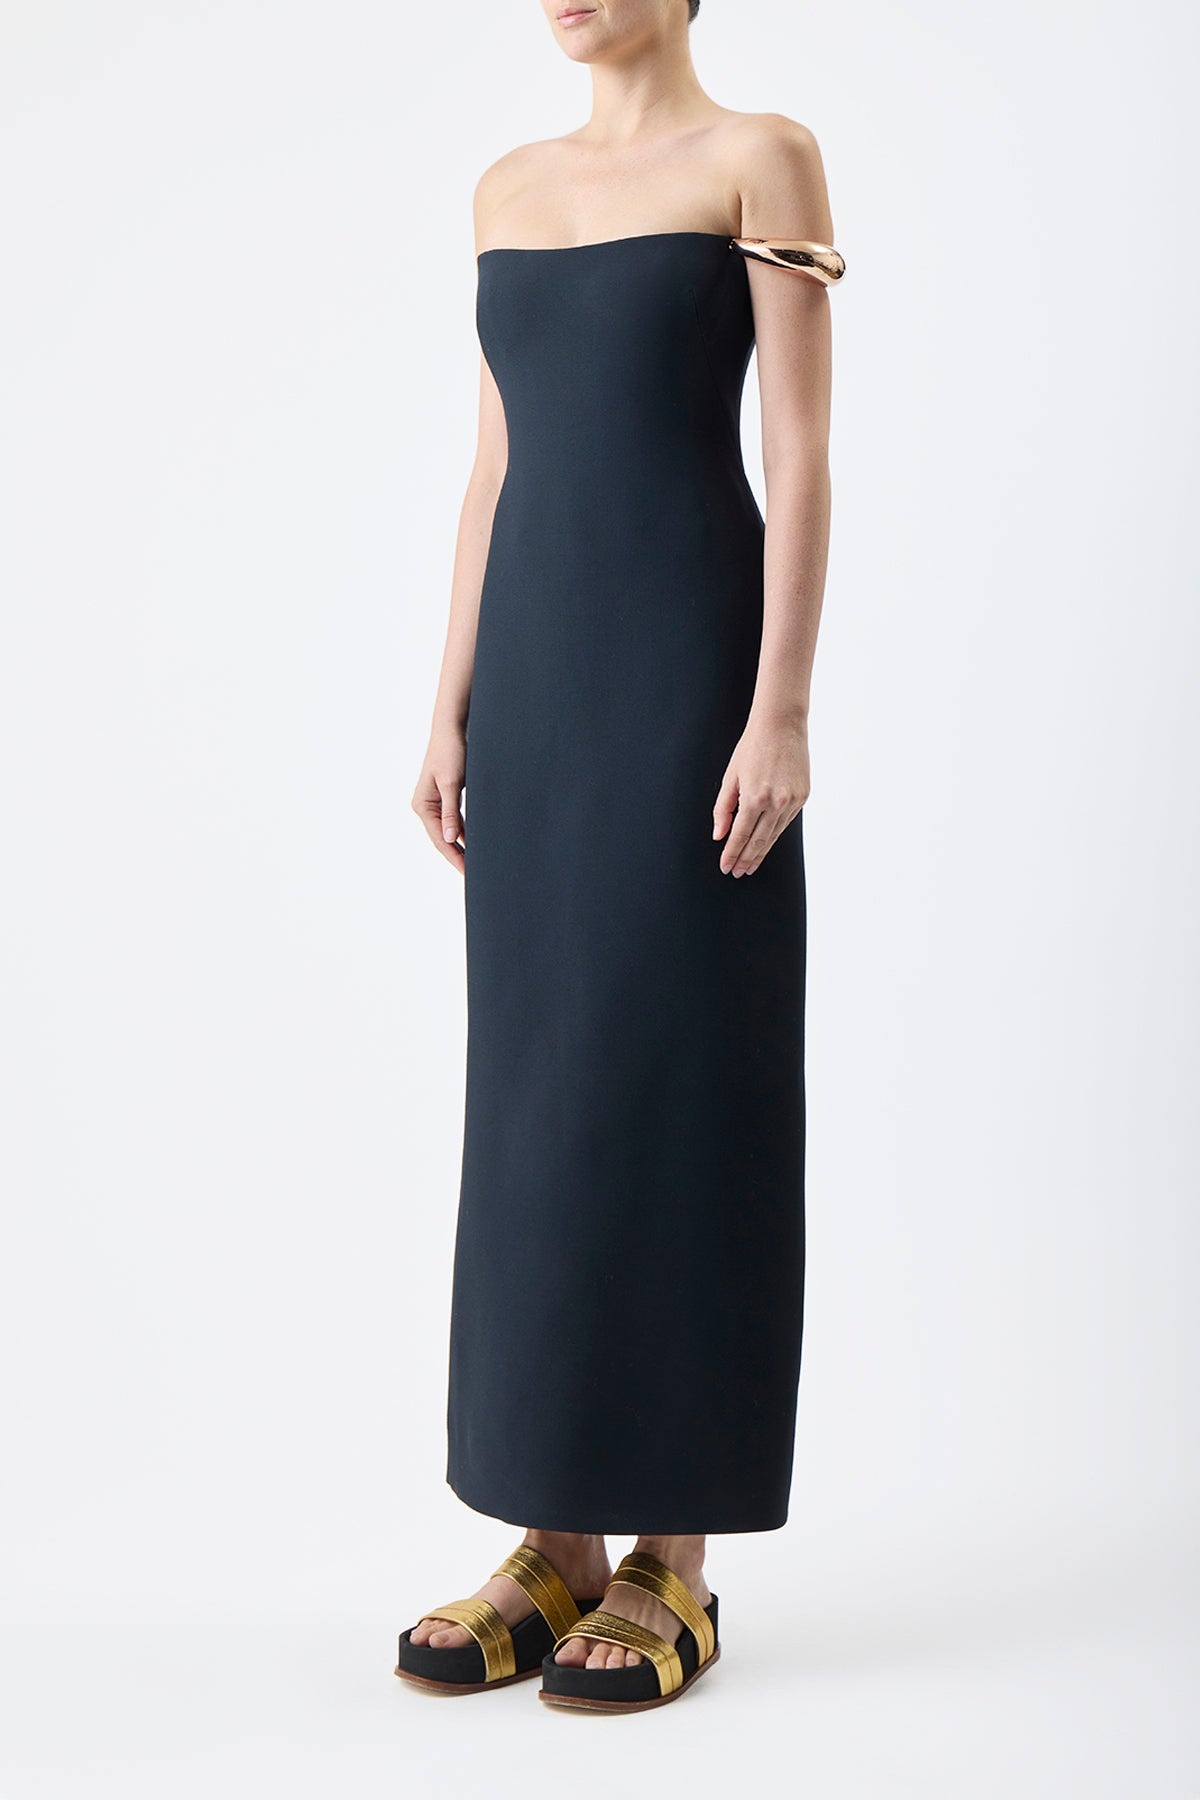 Anica Dress in Black Silk Wool Cady - 4